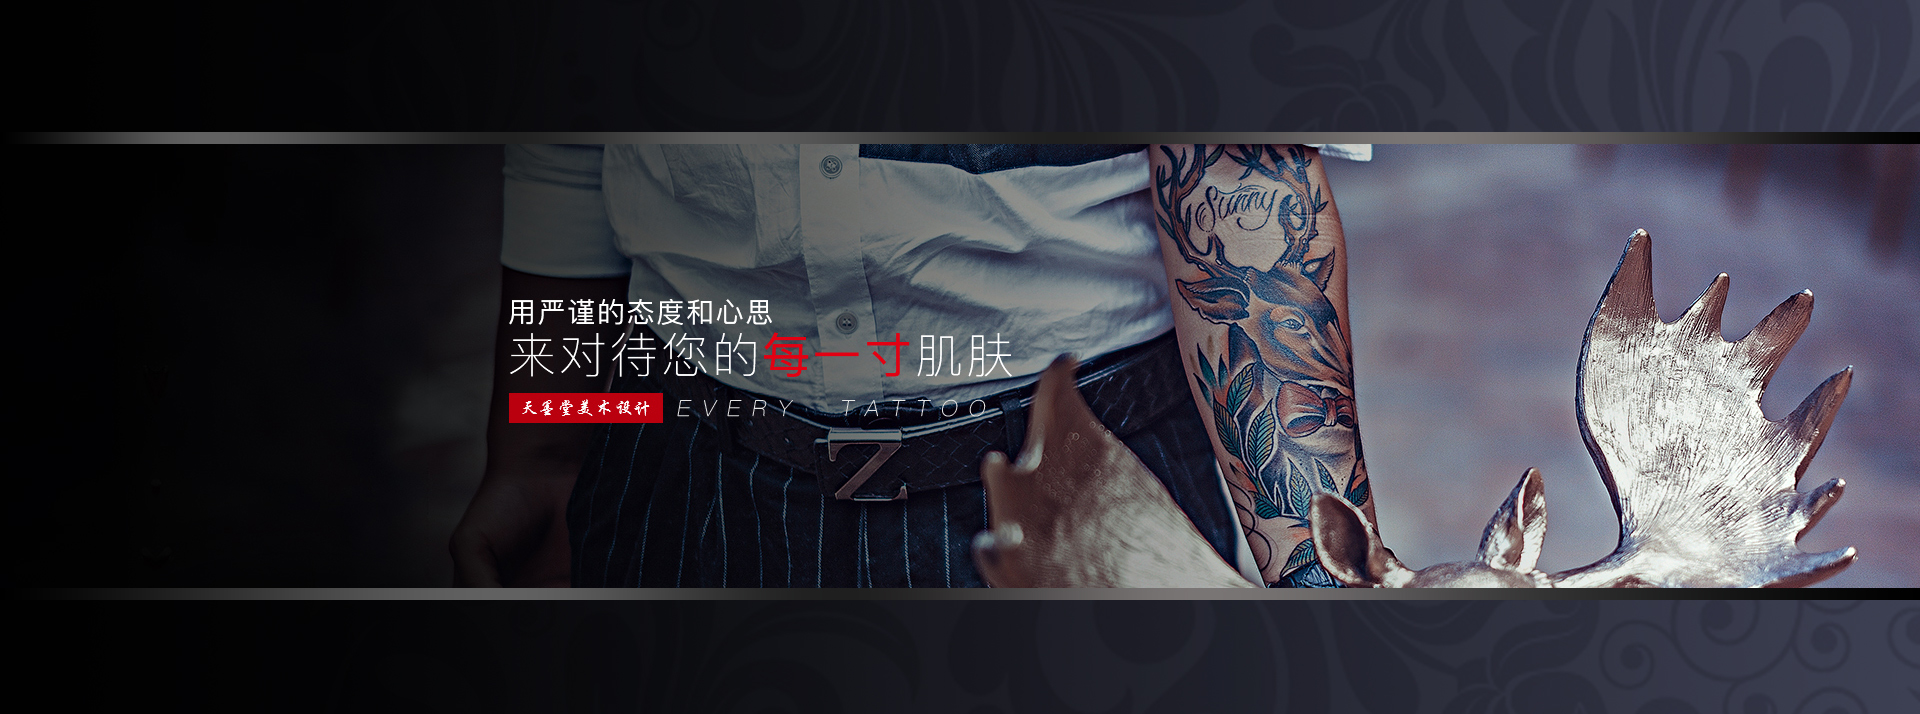 重慶紋身店